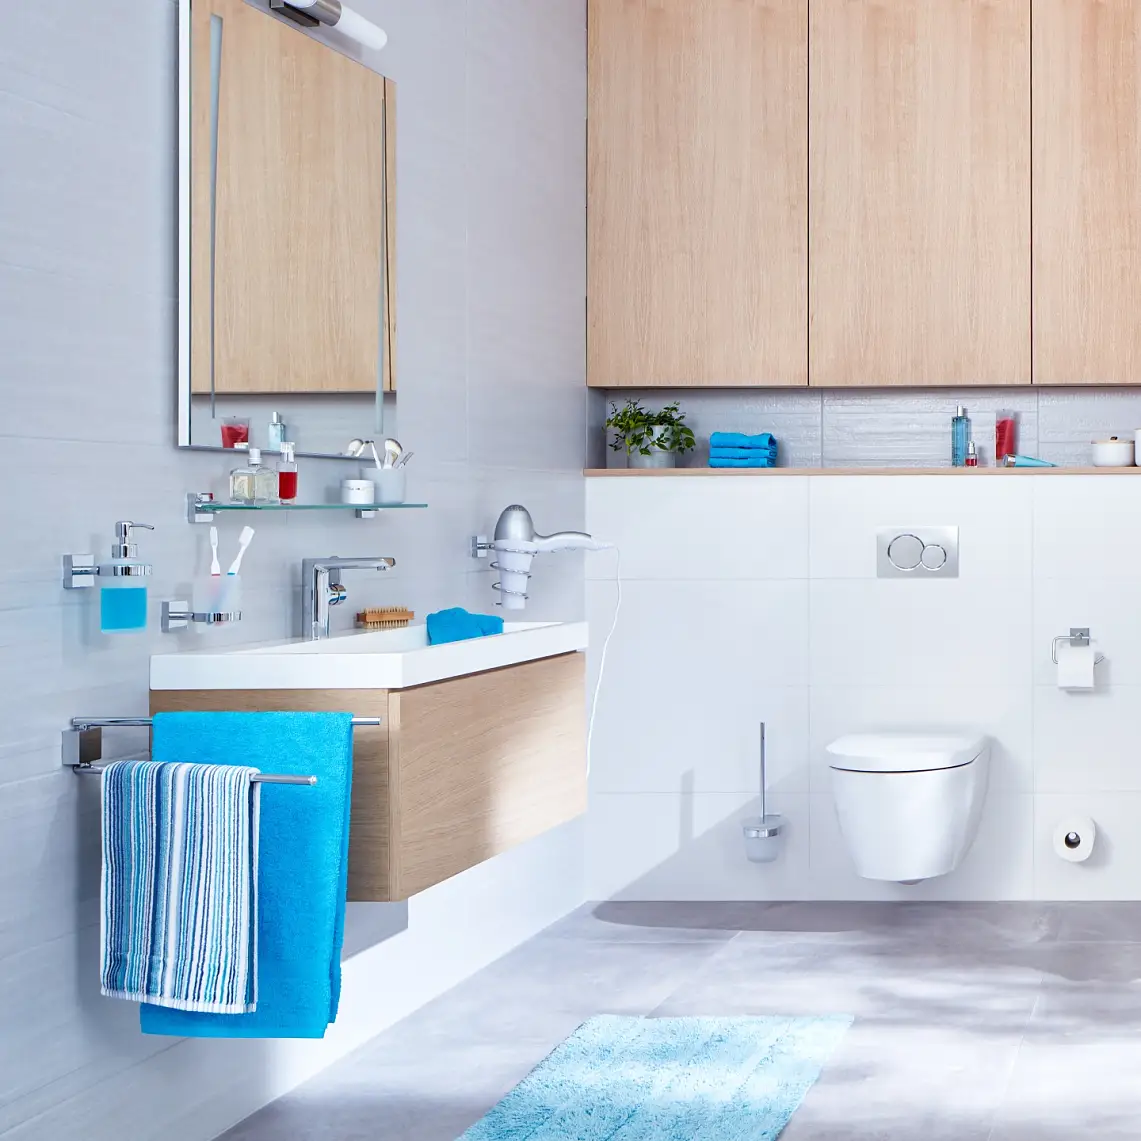 Design pulito e strutture lineari per un’esperienza bagno organizzata.